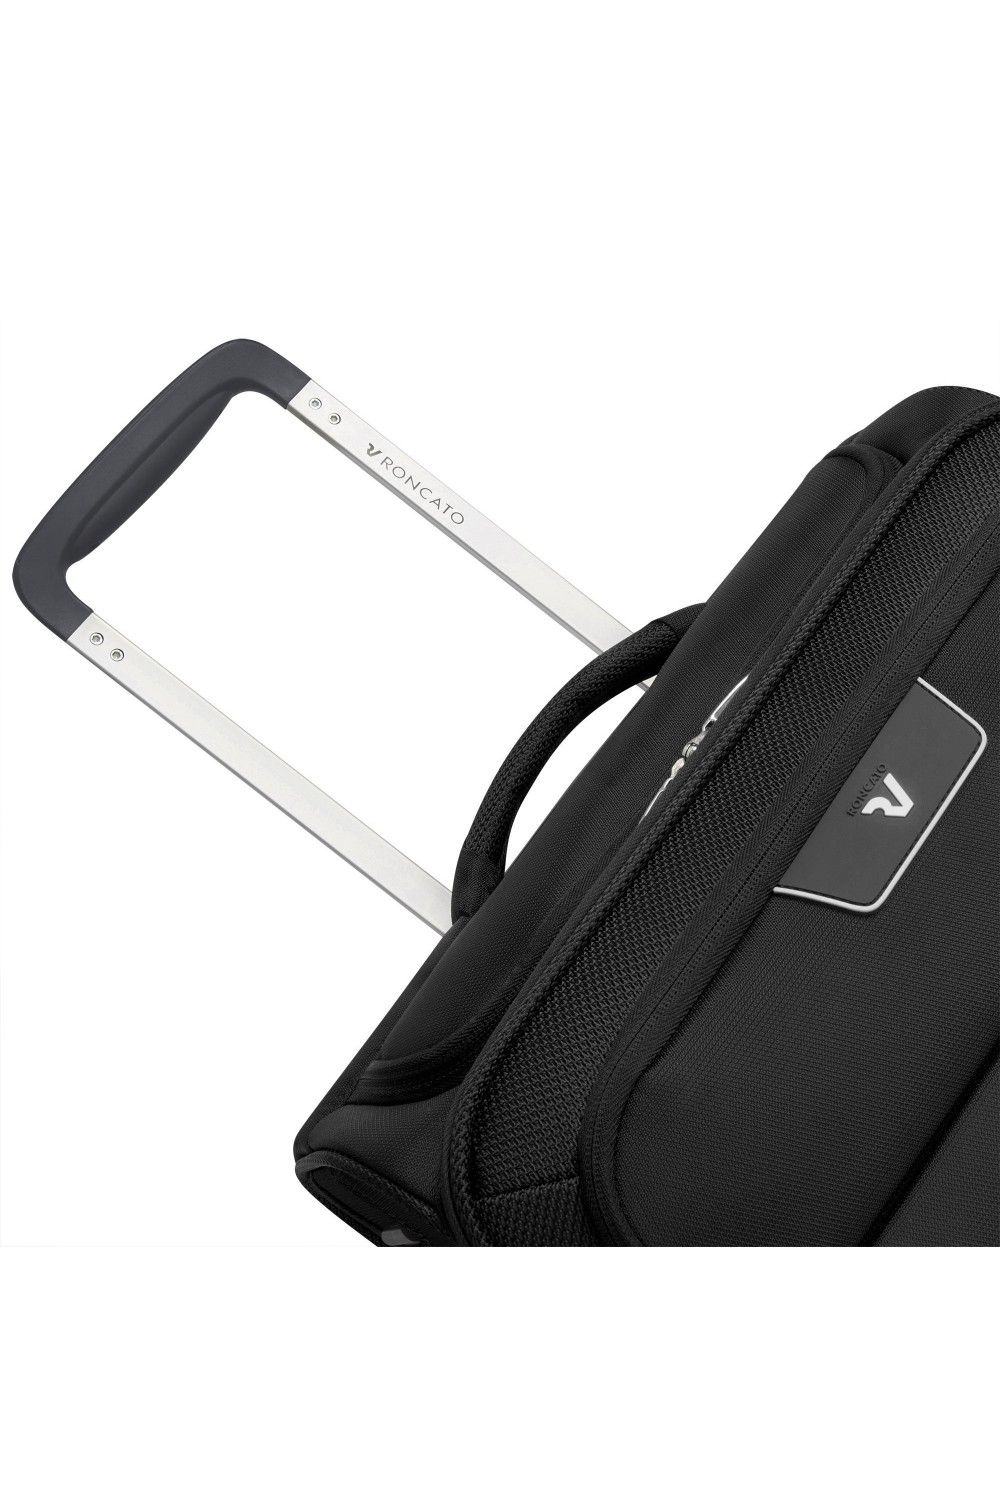 Hand luggage Roncato Joy 55cm 4 wheel USB